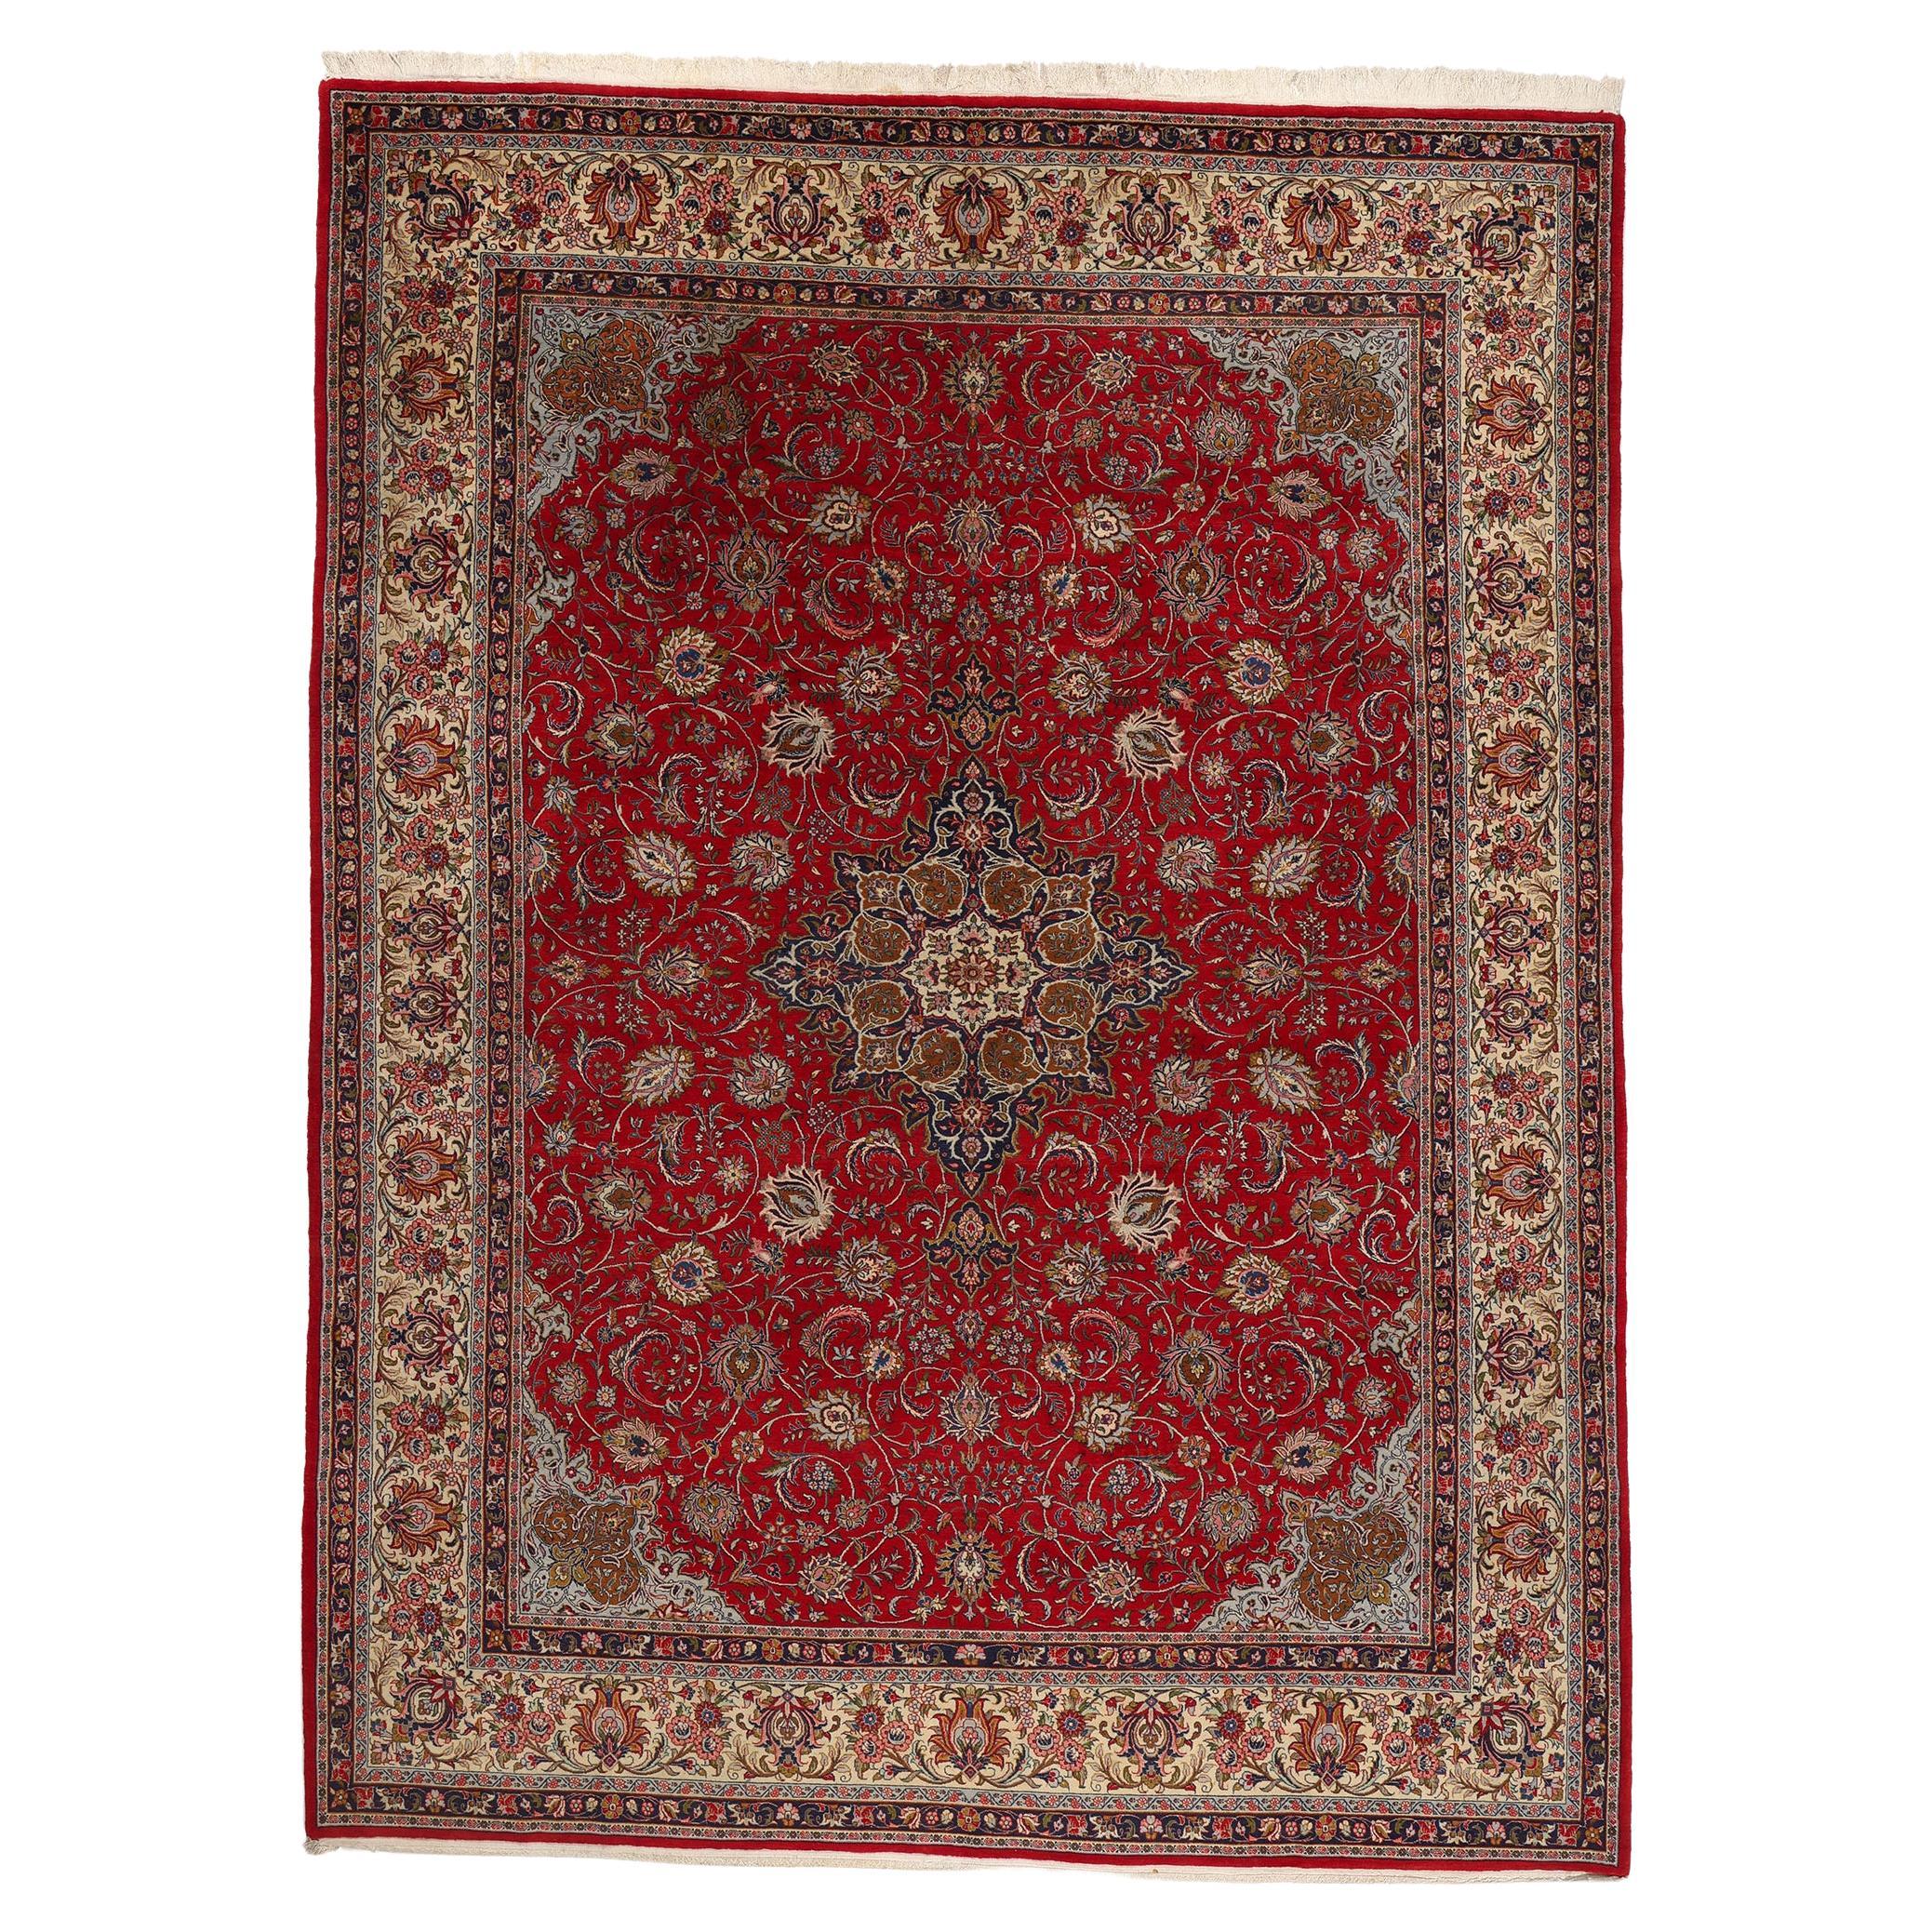 Persischer Kashan-Teppich aus den 1950er Jahren, zeitlose Eleganz trifft auf stattliche Dekadenz